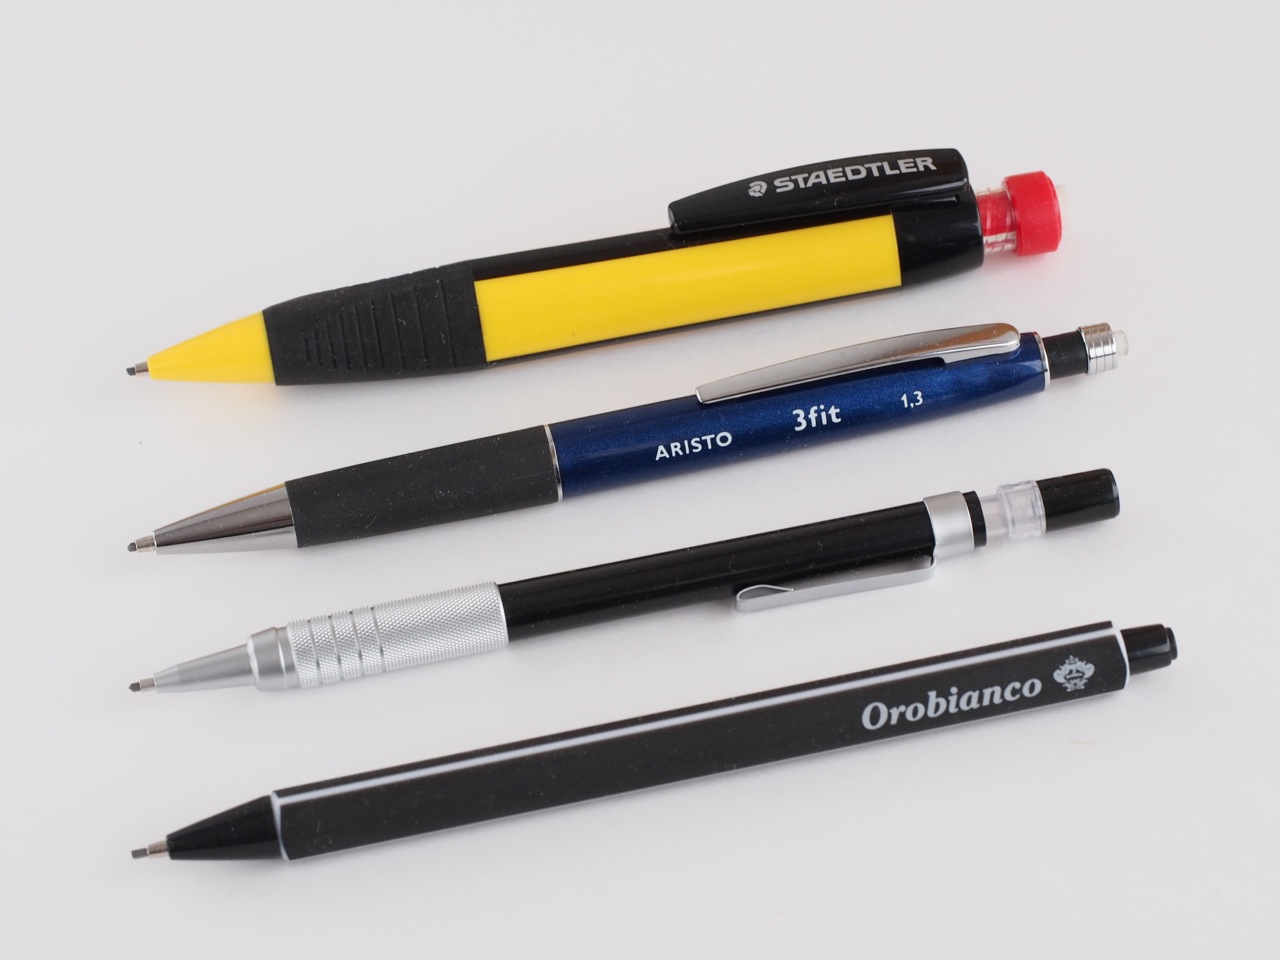 1.3mmシャープペンが優れている5つの理由 | 文房具 | クールシニアマガジン